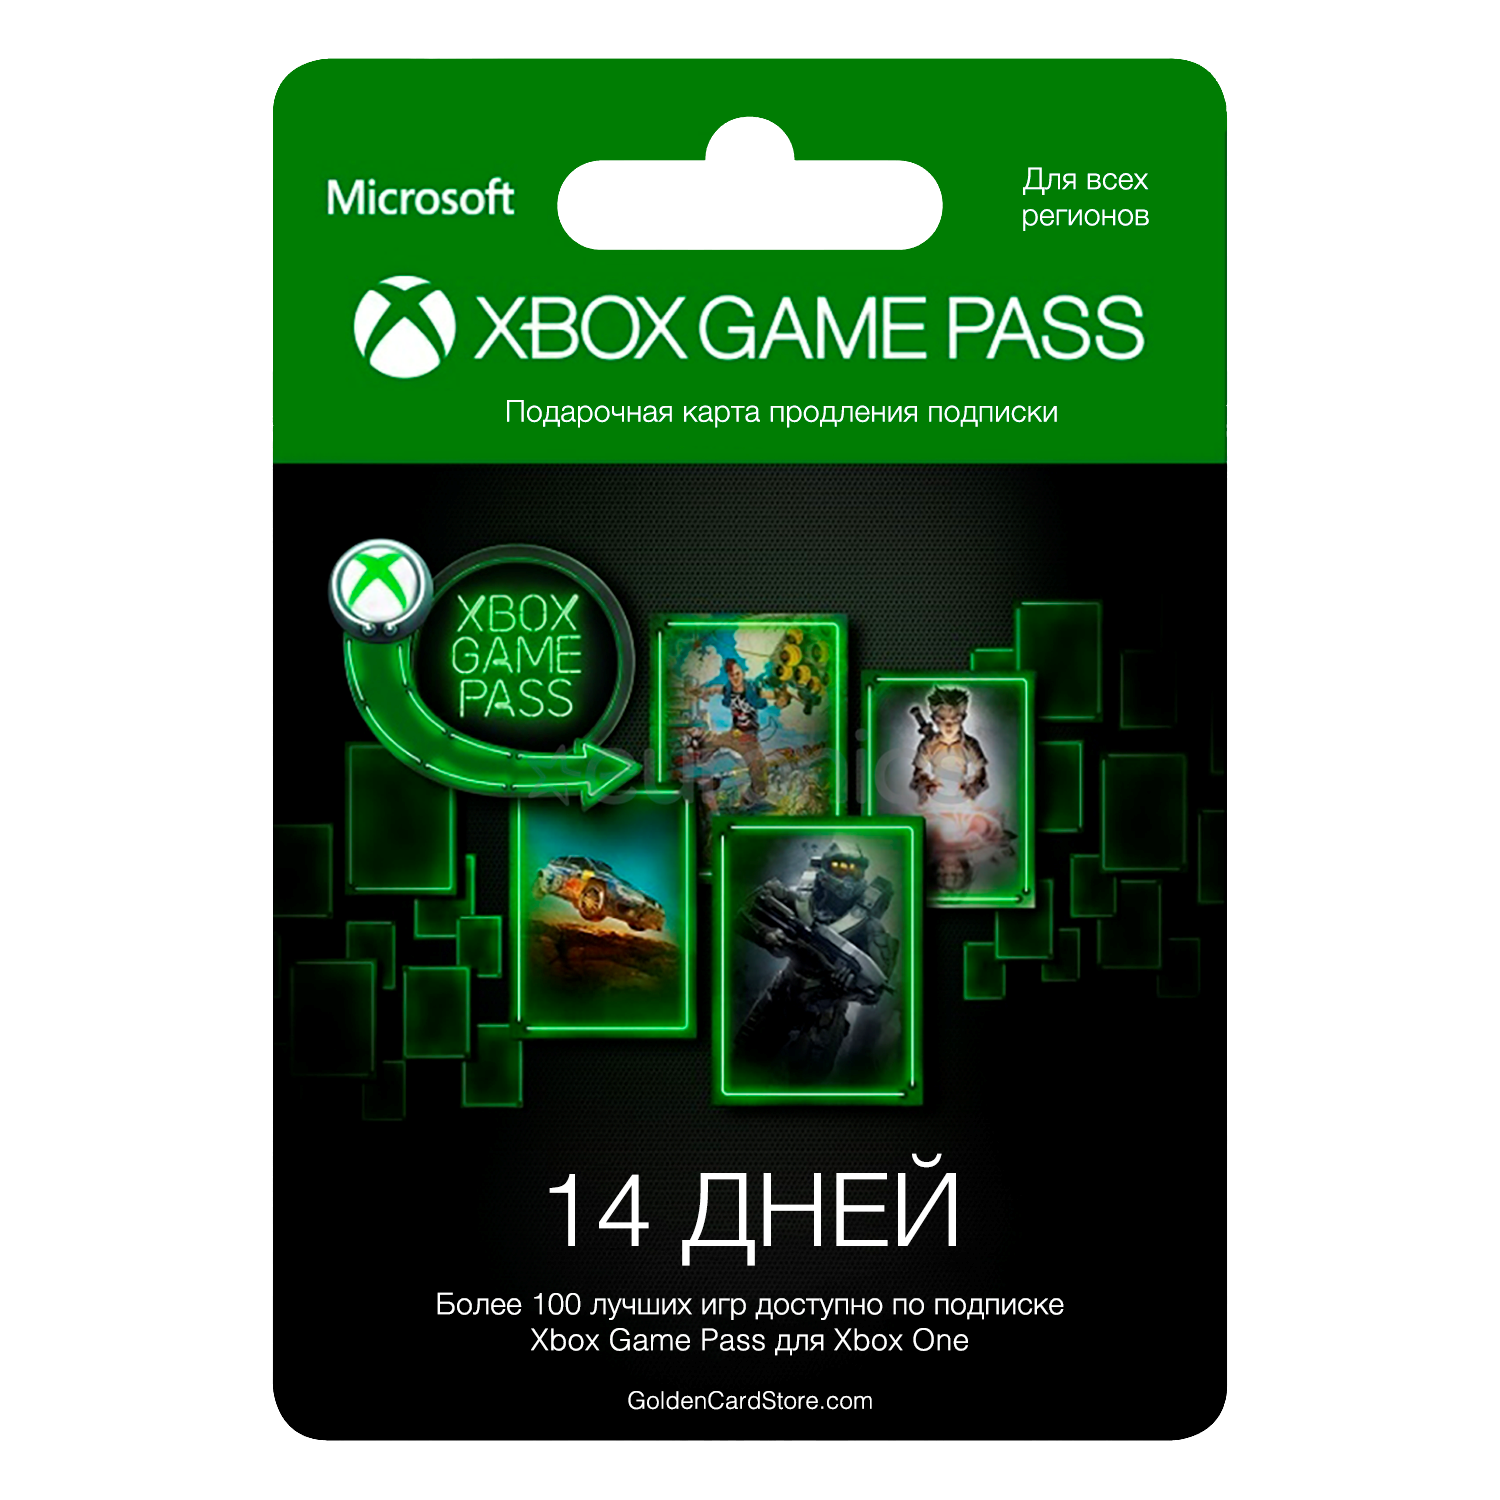 Подписка Xbox game Pass. Карта для Xbox game Pass. Microsoft Xbox подписка. Карточка гейм пасс. Купить gamepass xbox